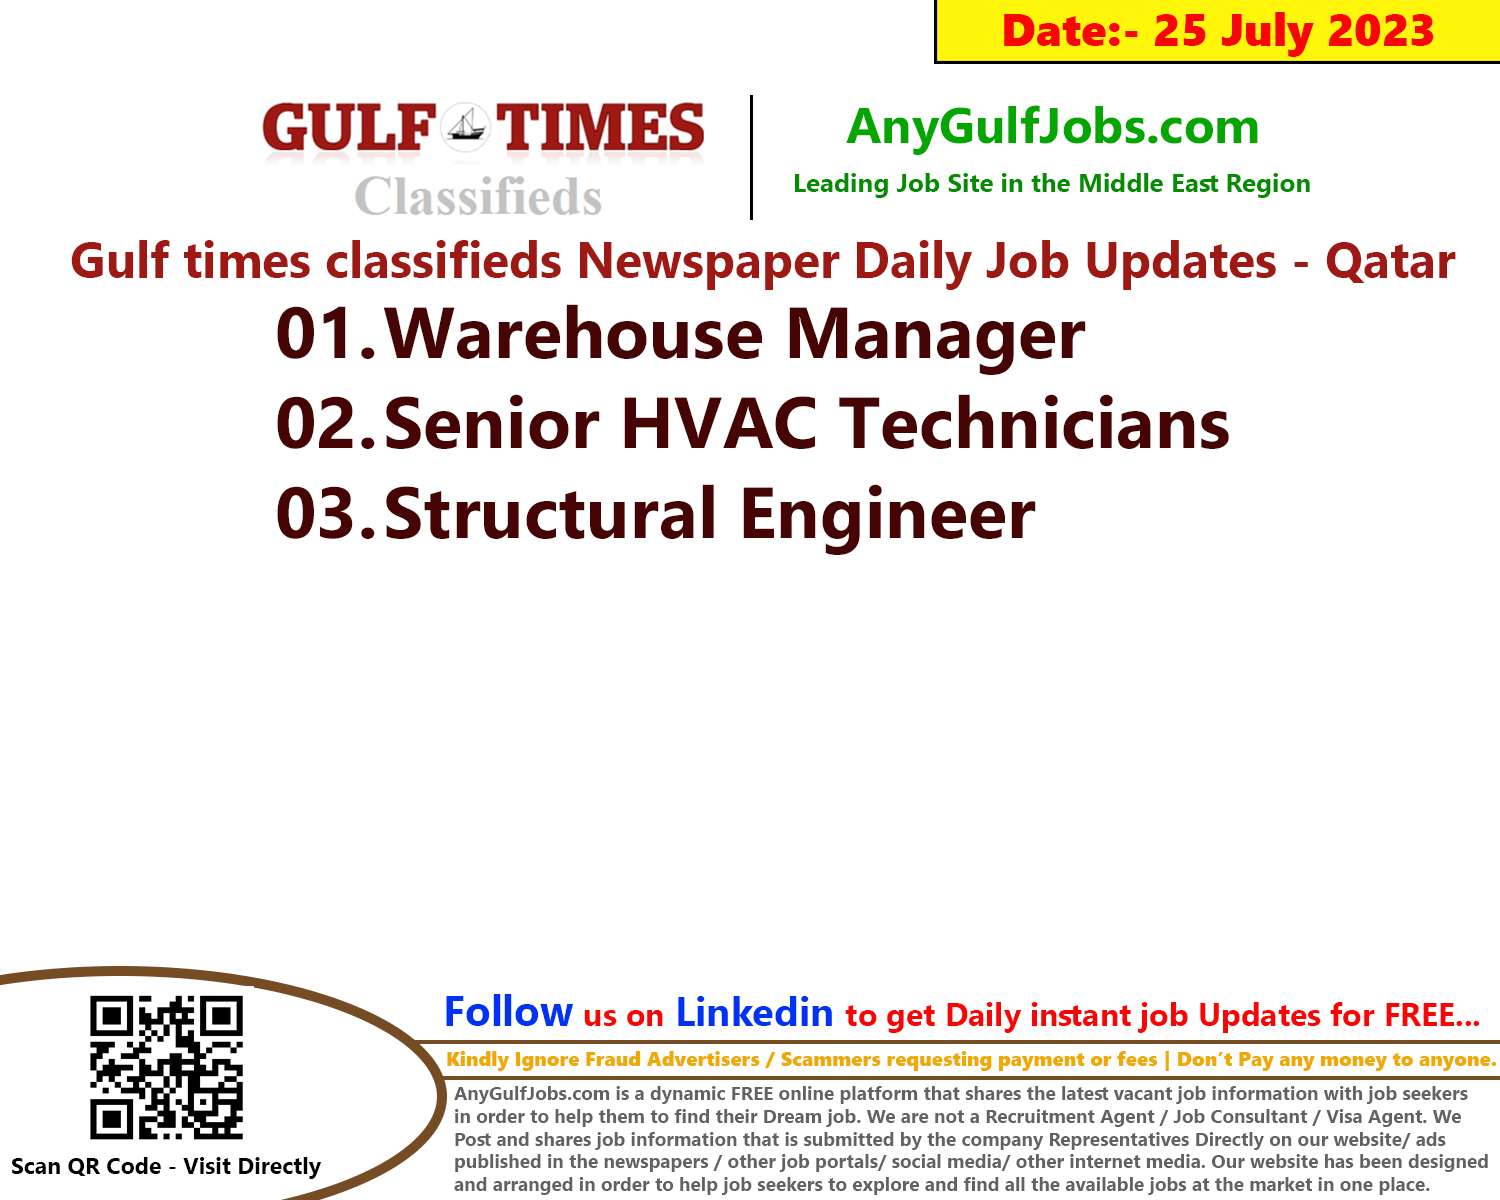 Gulf times classifieds Job Vacancies Qatar - 25 July 2023